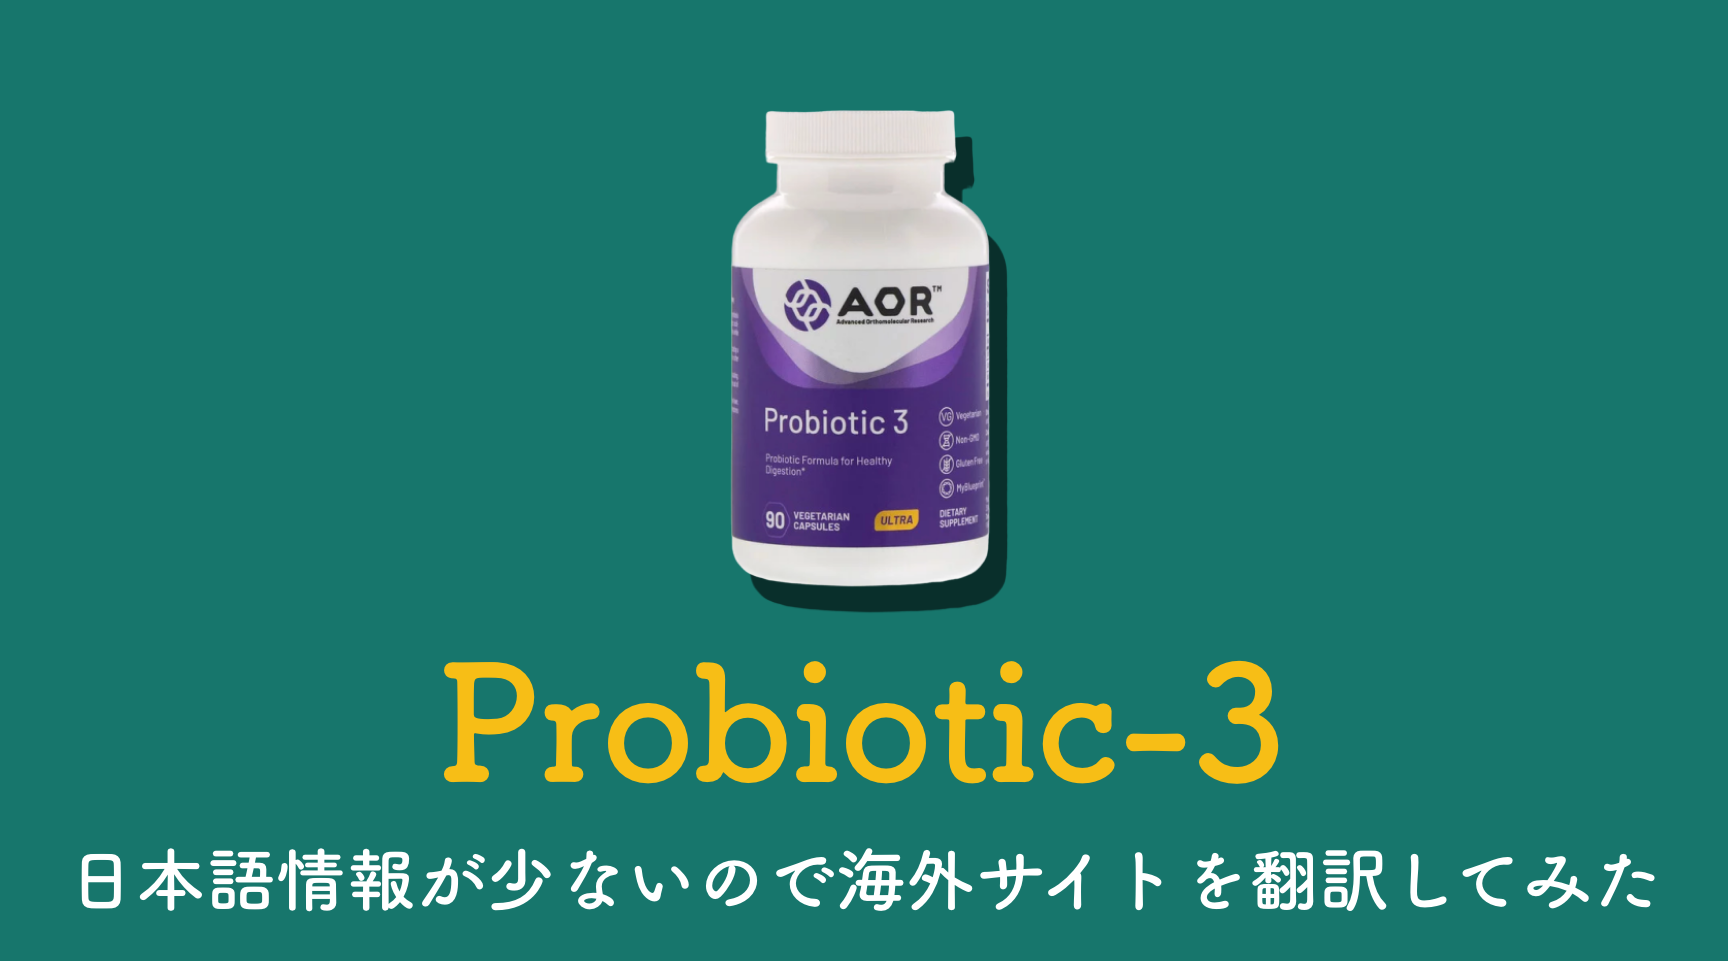 AOR社のProbiotic-3、日本語情報が少ないので海外サイトを翻訳してみた